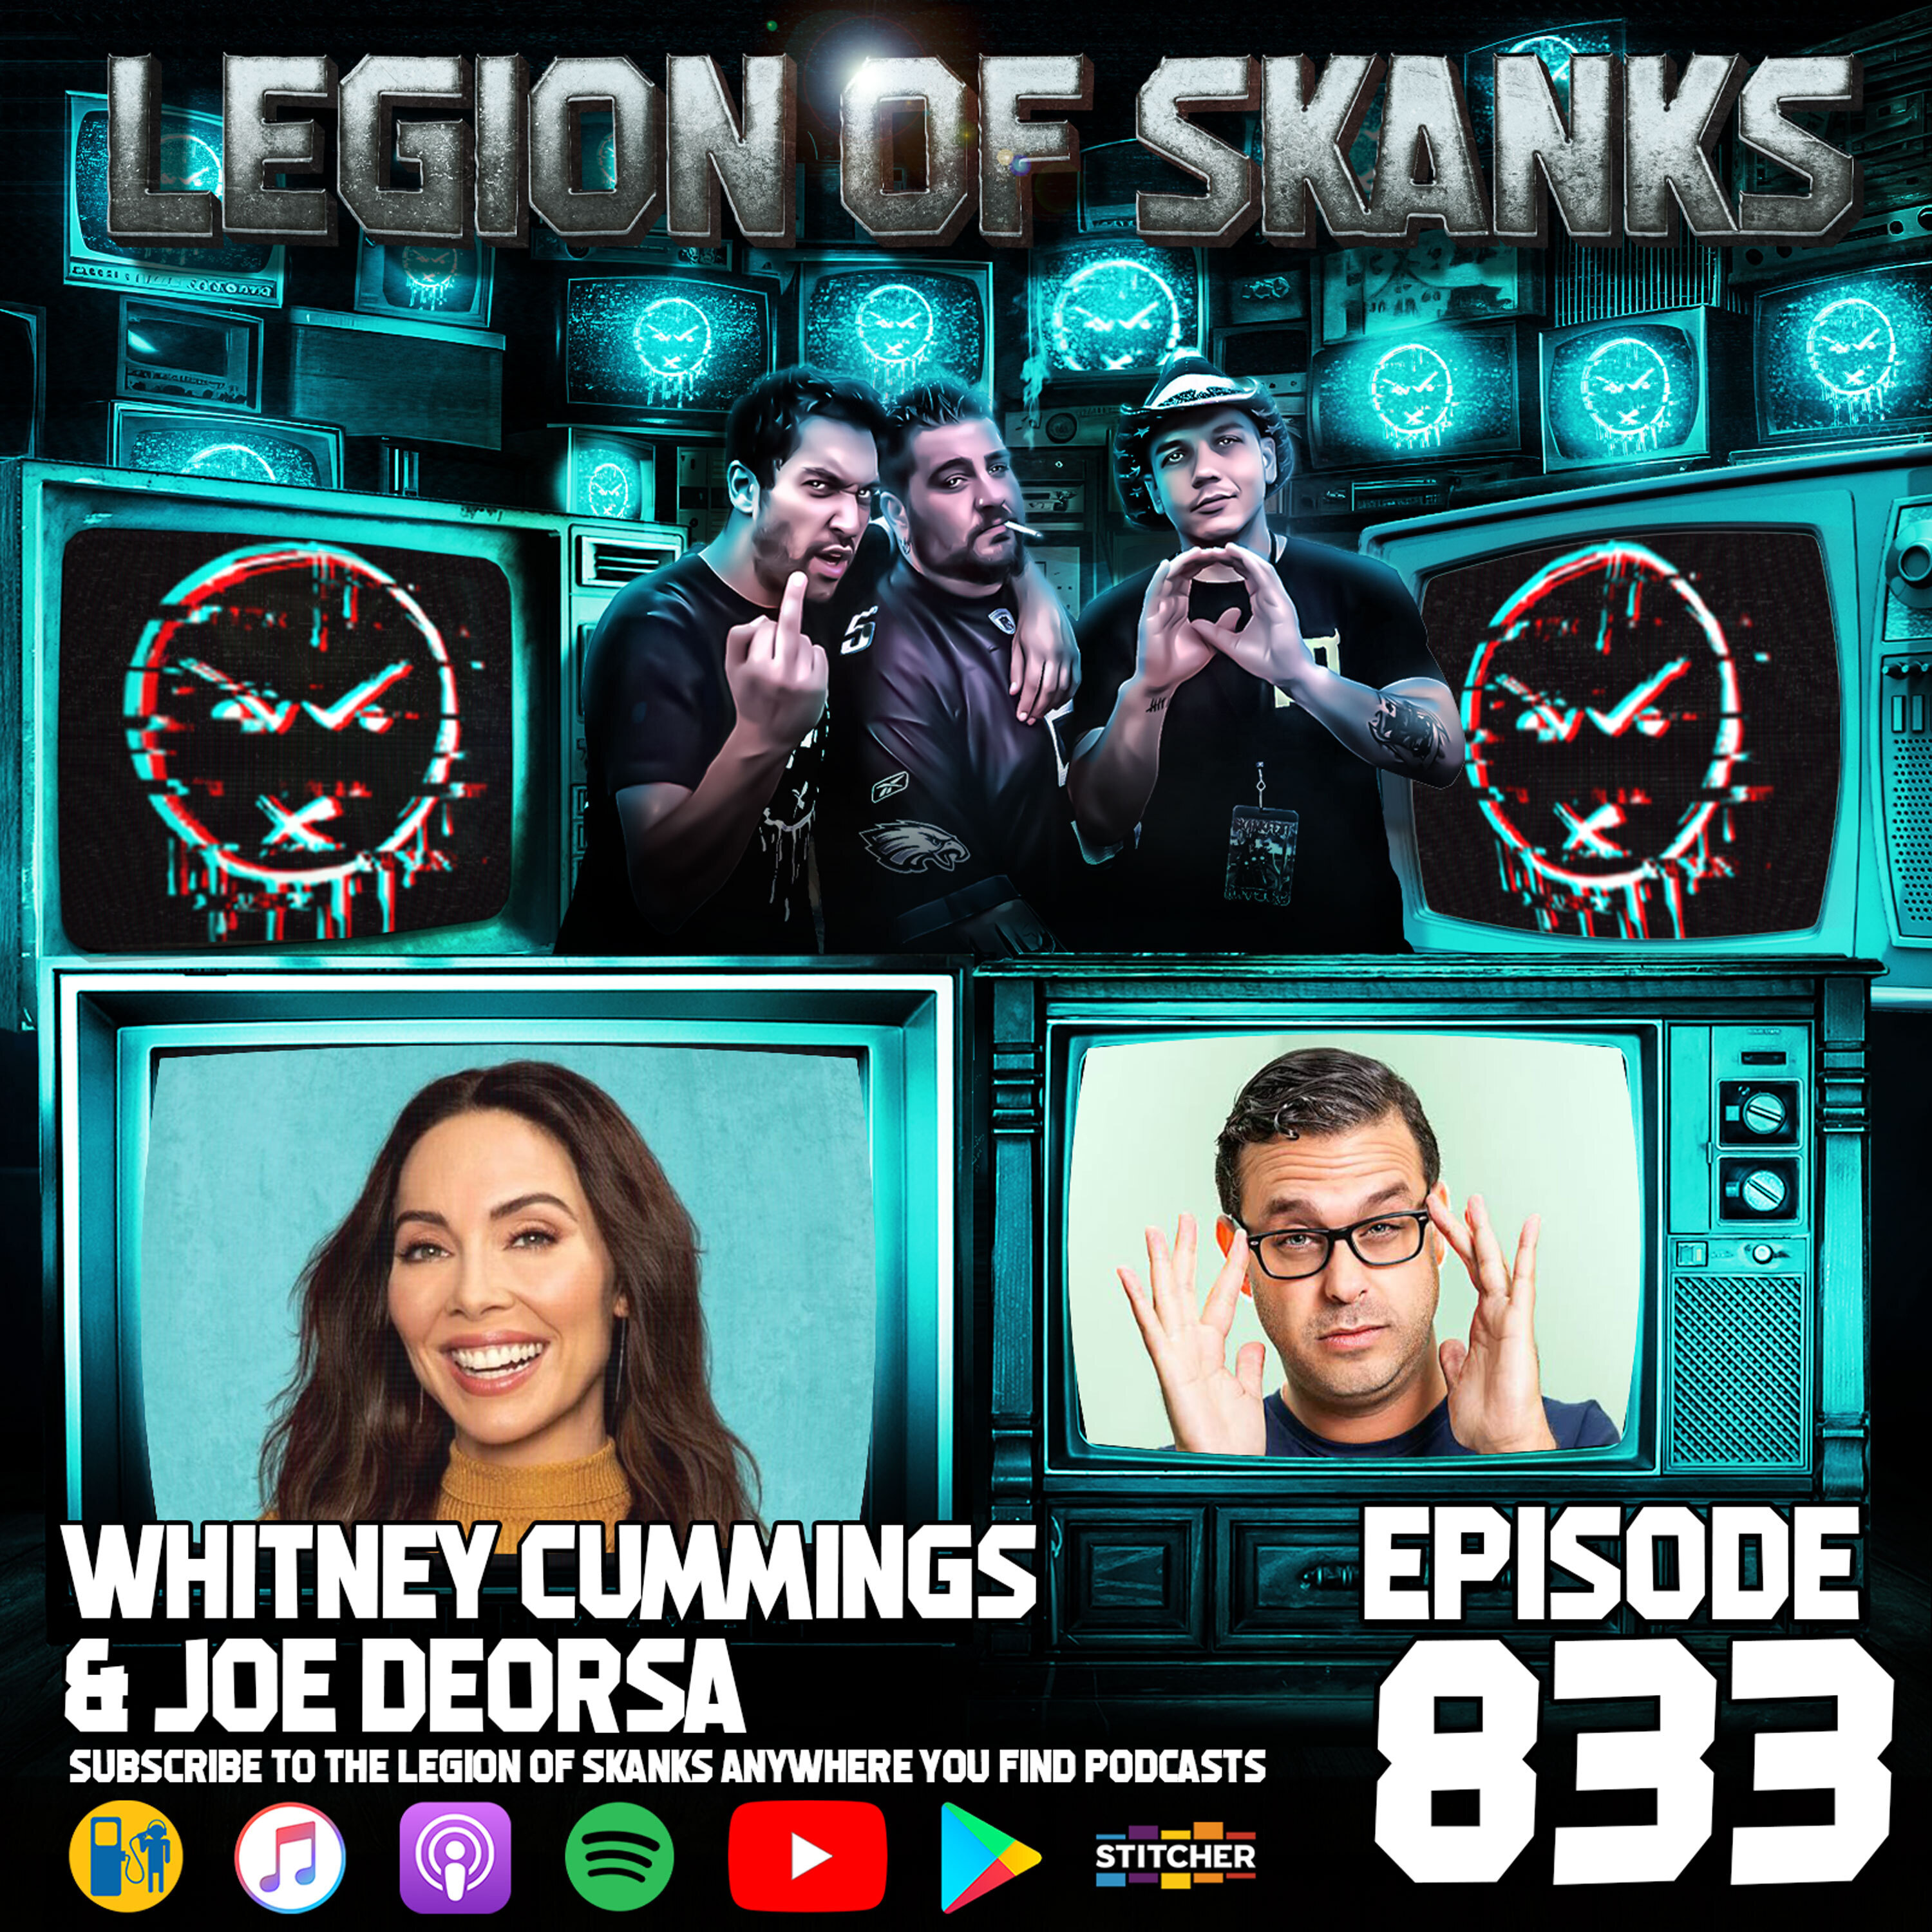 Whitney Cummings & Joe DeRosa - Live from Skankfest 2022 - Episode 833